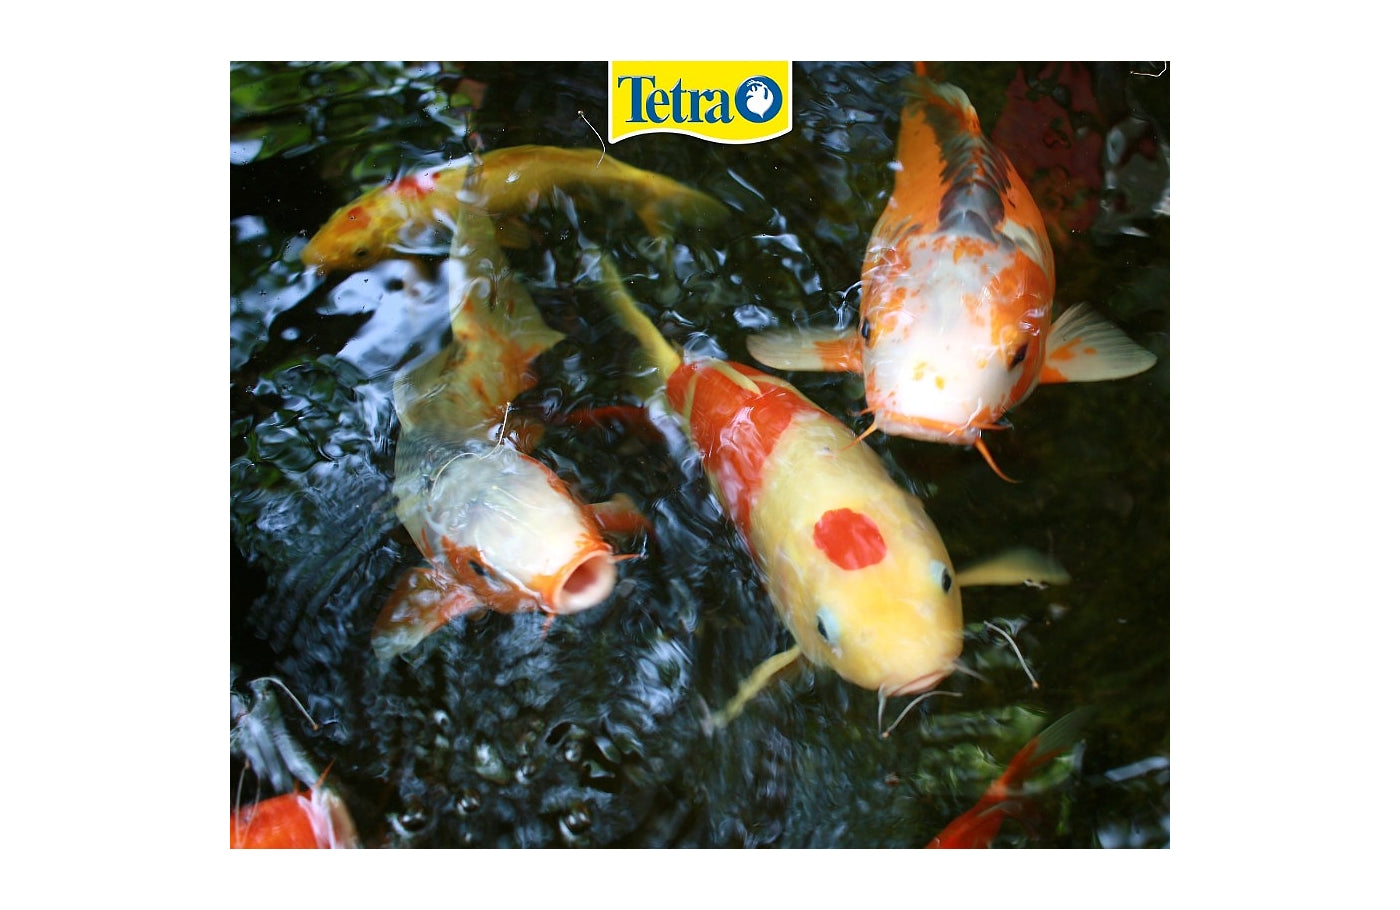 Tetra Pond Koi Sticks (50 l / 7,5 kg) - feed for koi fish